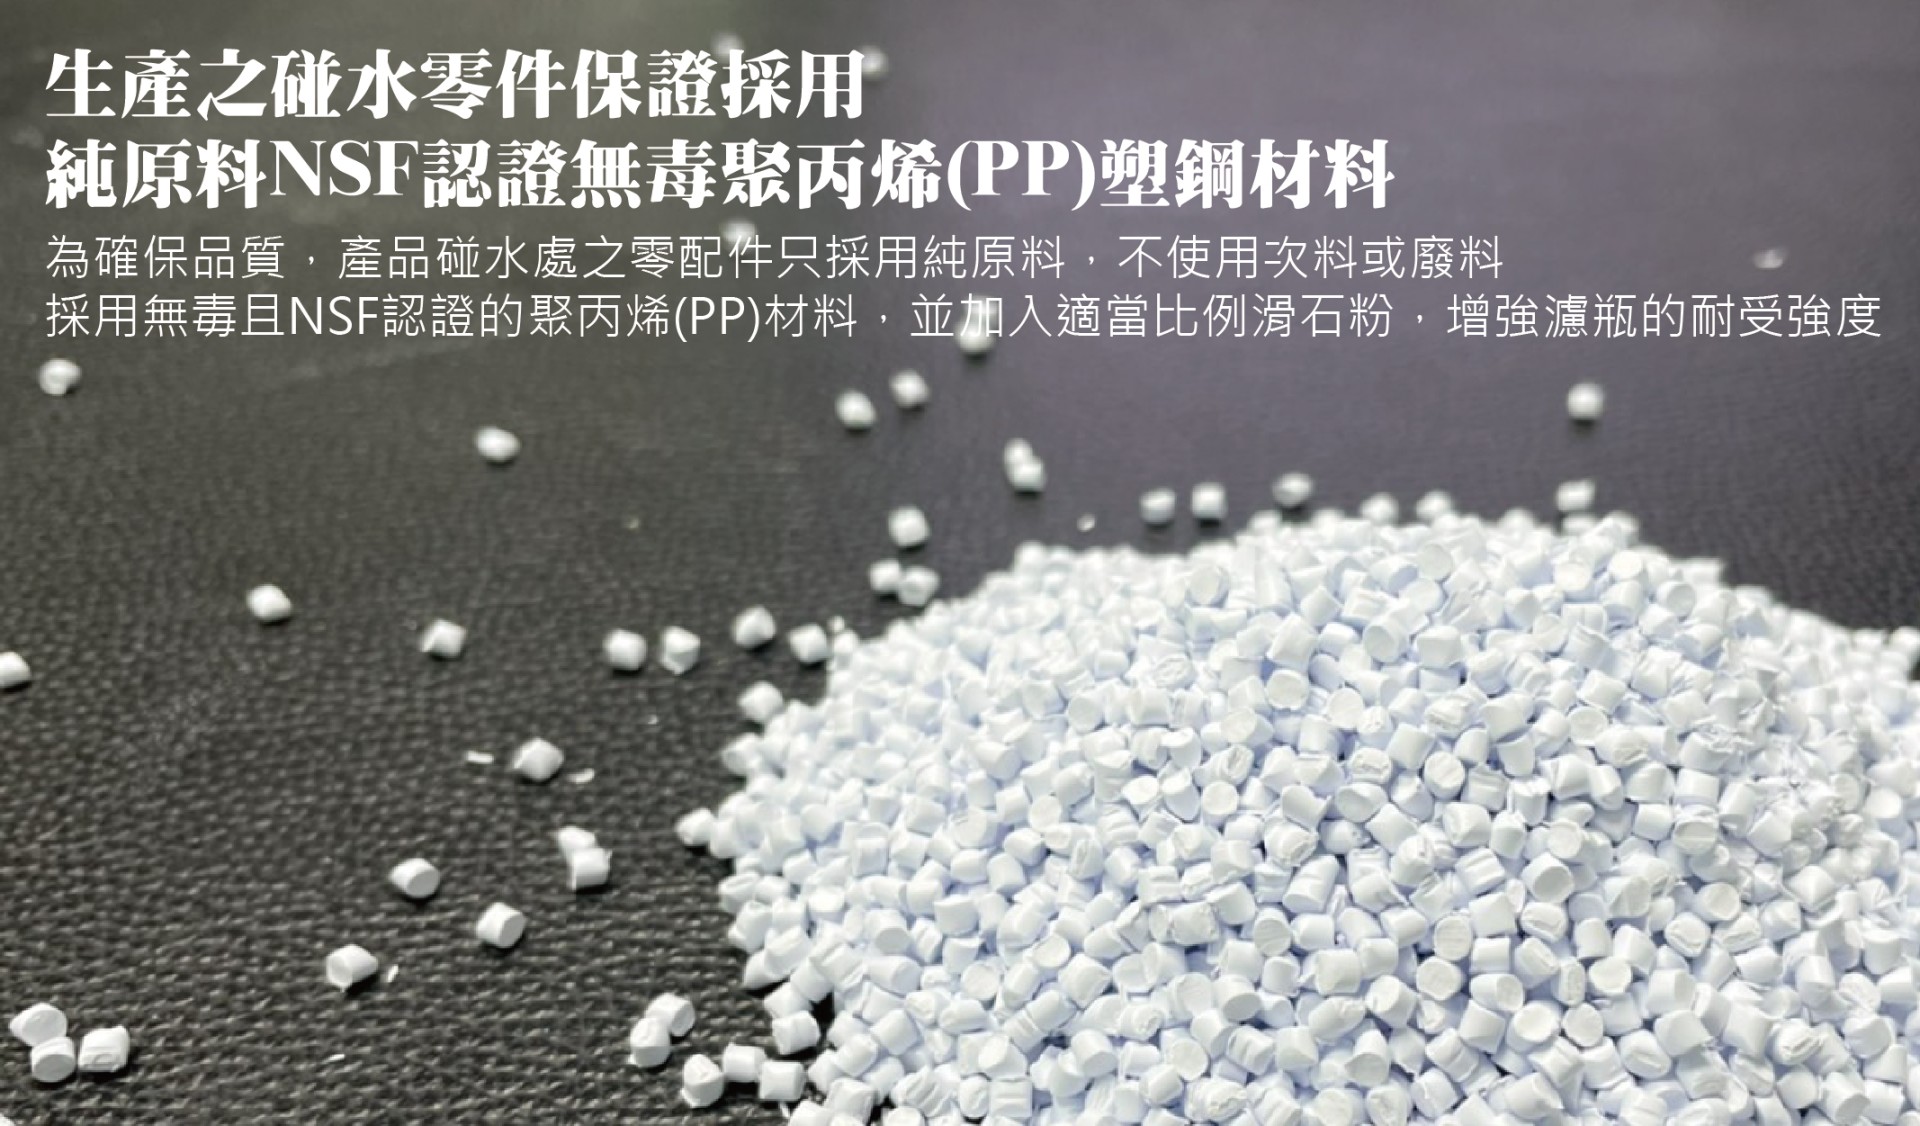 生產之碰水零件保證採用 純原料NSF認證無毒聚丙烯(PP)塑鋼材料